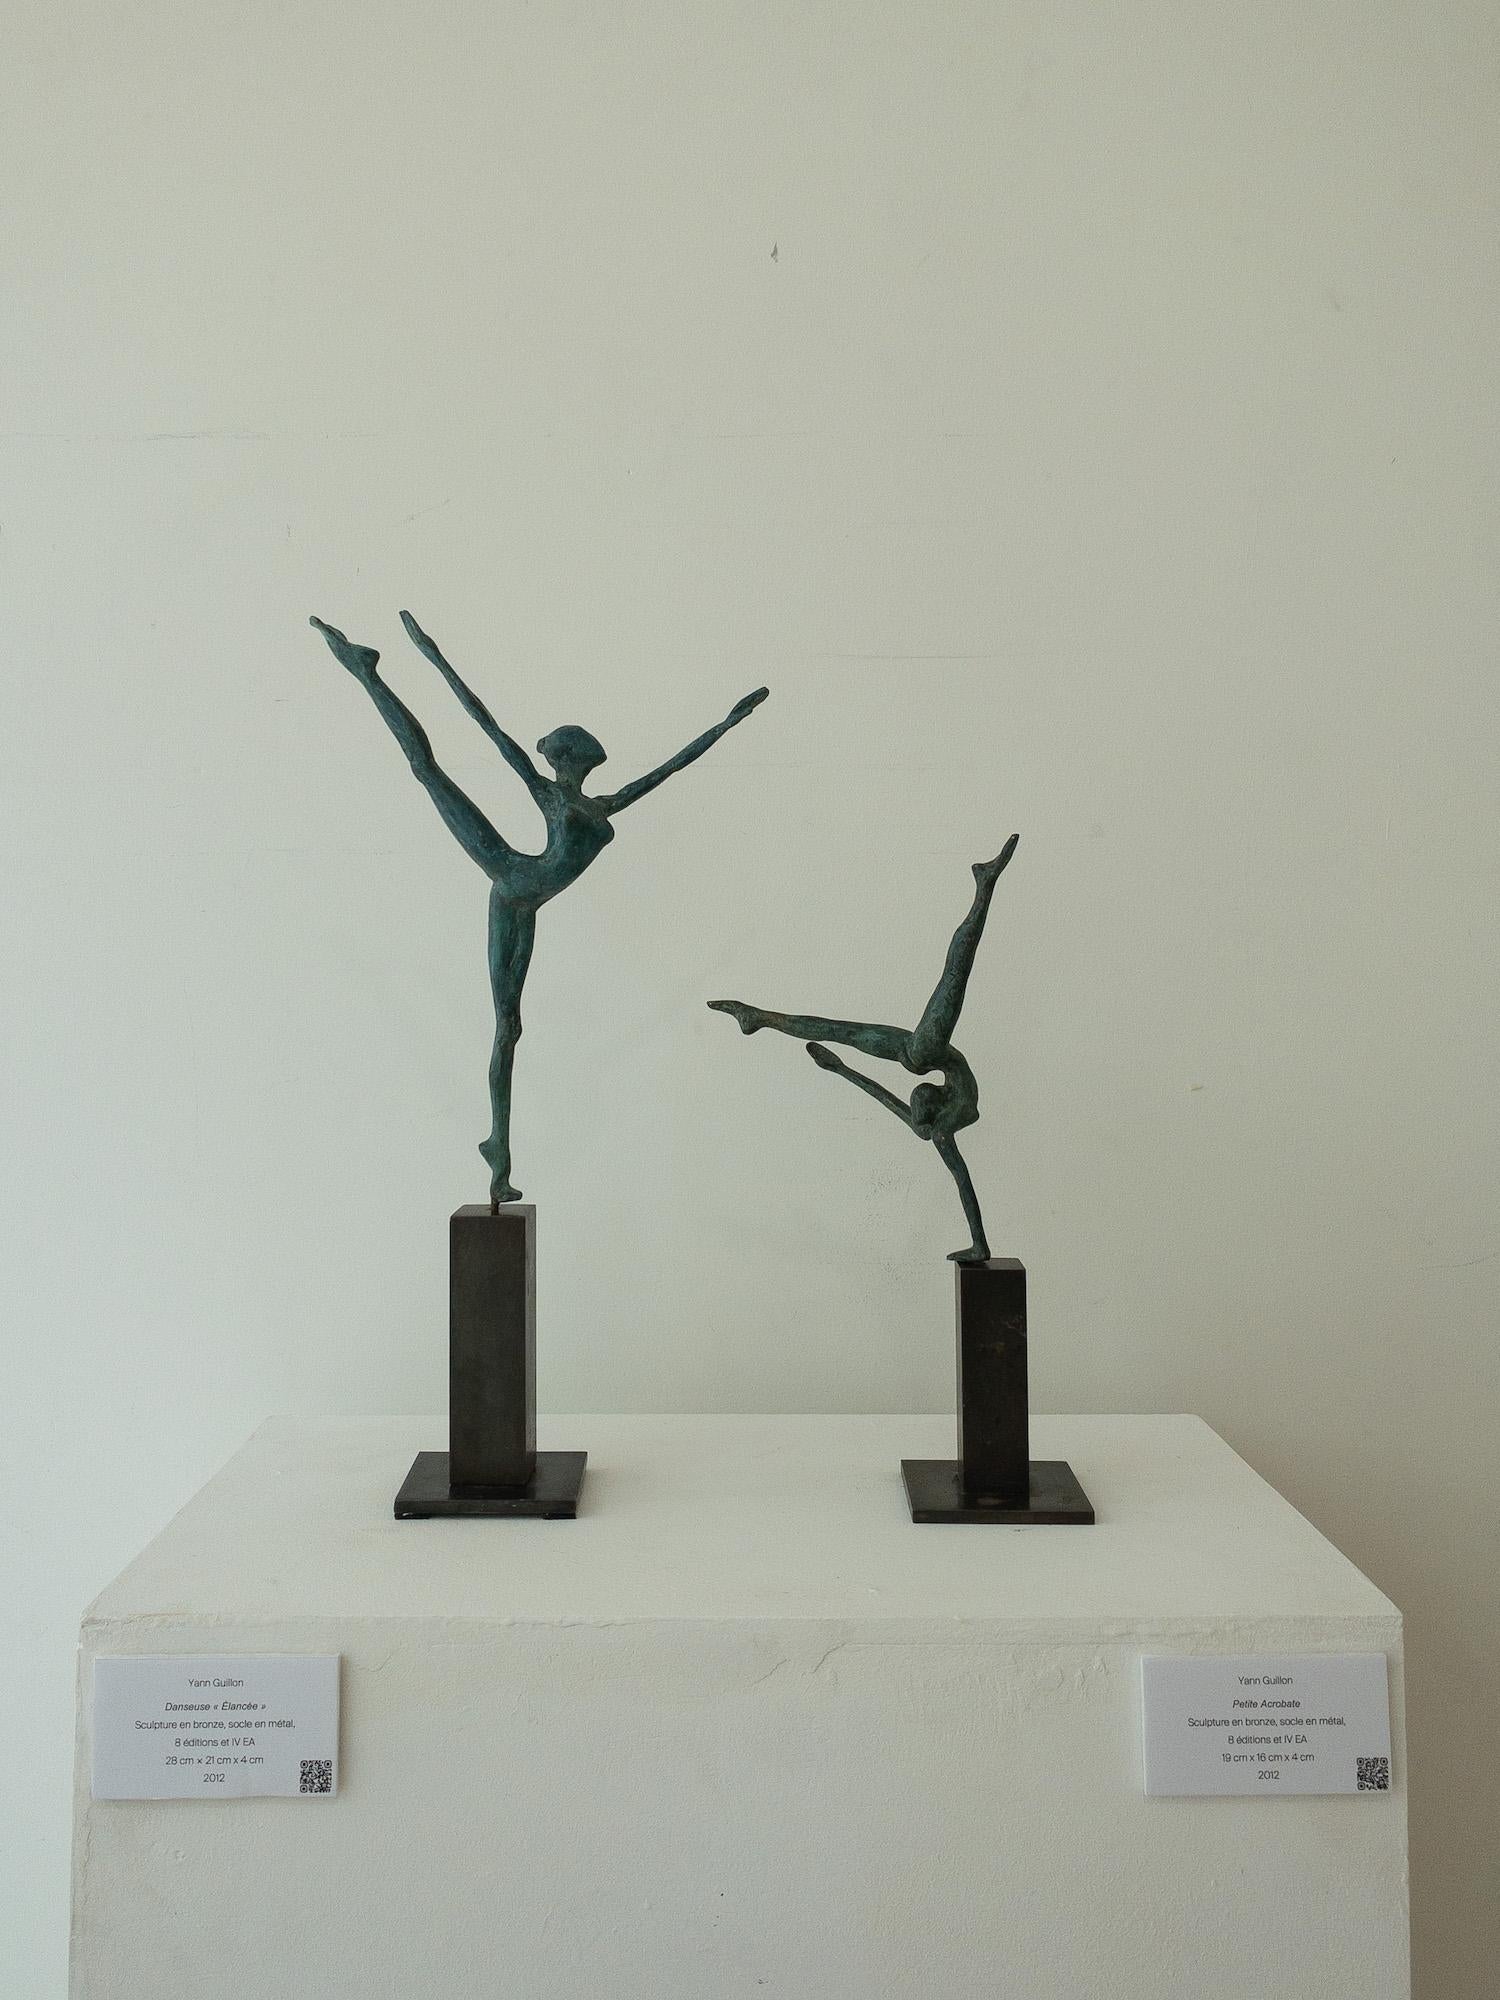 Petite Acrobate est une sculpture en bronze de l'artiste contemporain Yann Guillon, dont les dimensions sont de 19 × 16 × 4 cm (7,5 × 6,3 × 1,6 in). Dimensions de la base métallique : 11 x 8 x 8 cm (4,3 x 3,1 x 3,1 in). Hauteur de la sculpture avec